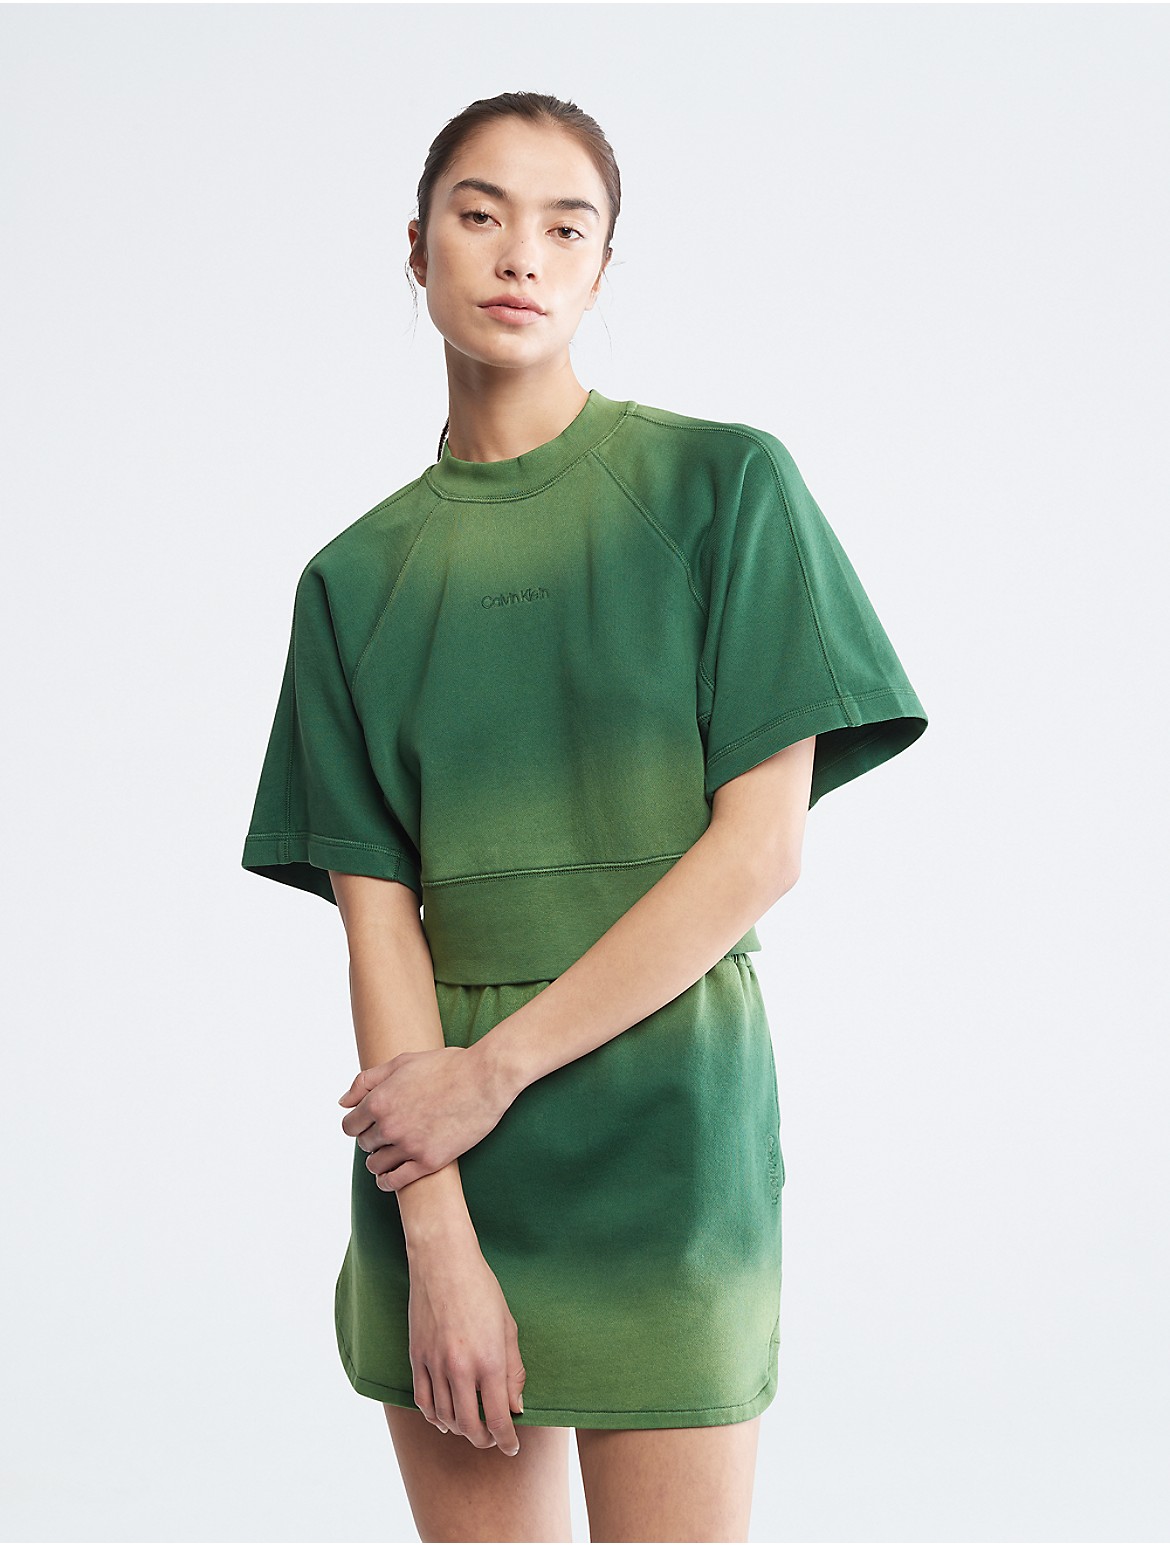 Calvin Klein Women's Sunbleached Raglan Sleeve Crewneck T-Shirt - Green - XS